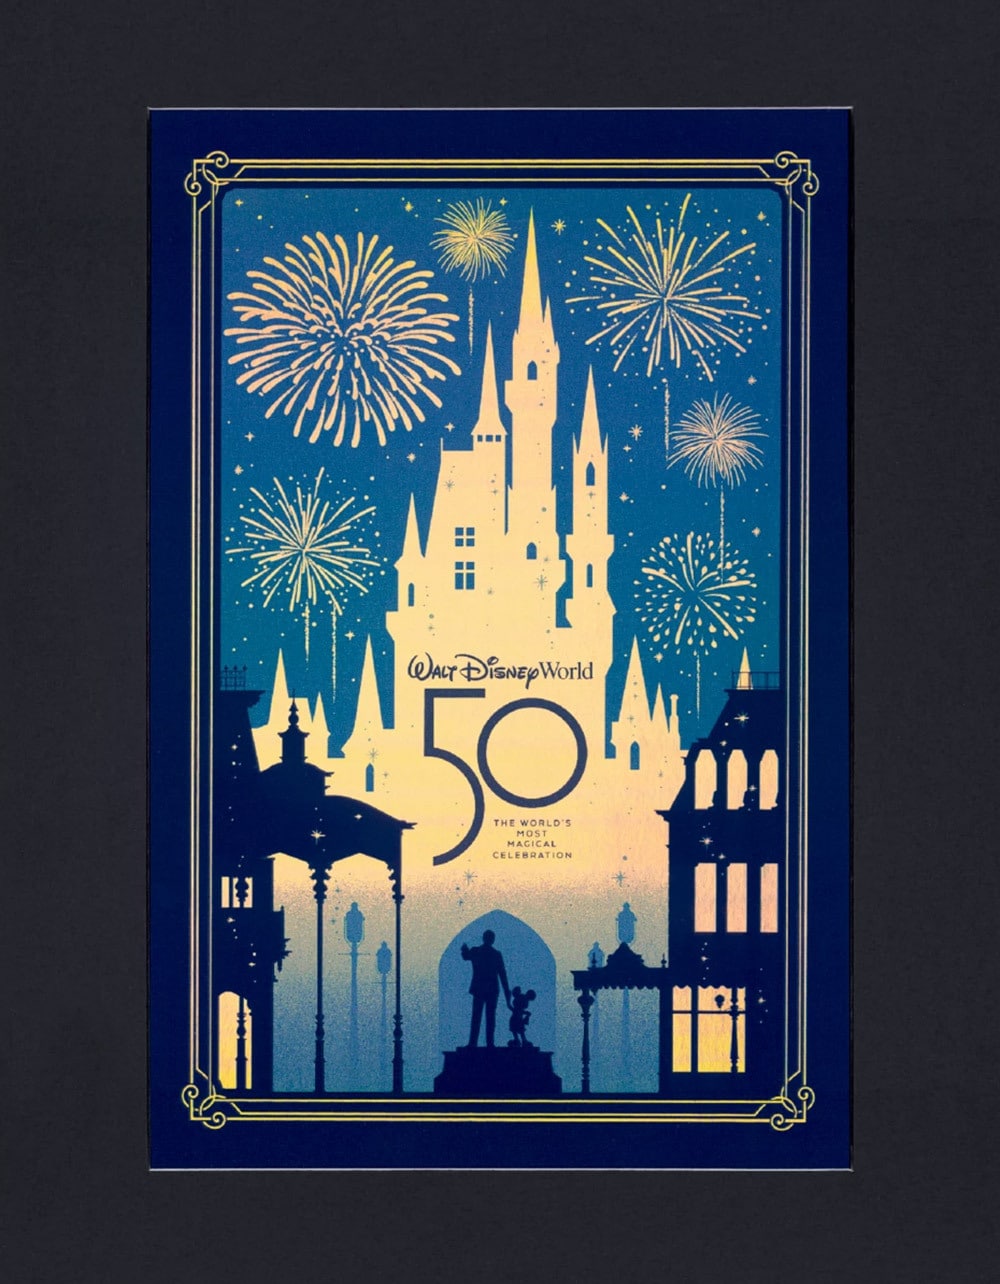 絕妙創意！ 巴黎迪士尼樂園公佈30 週年慶典LOGO 10